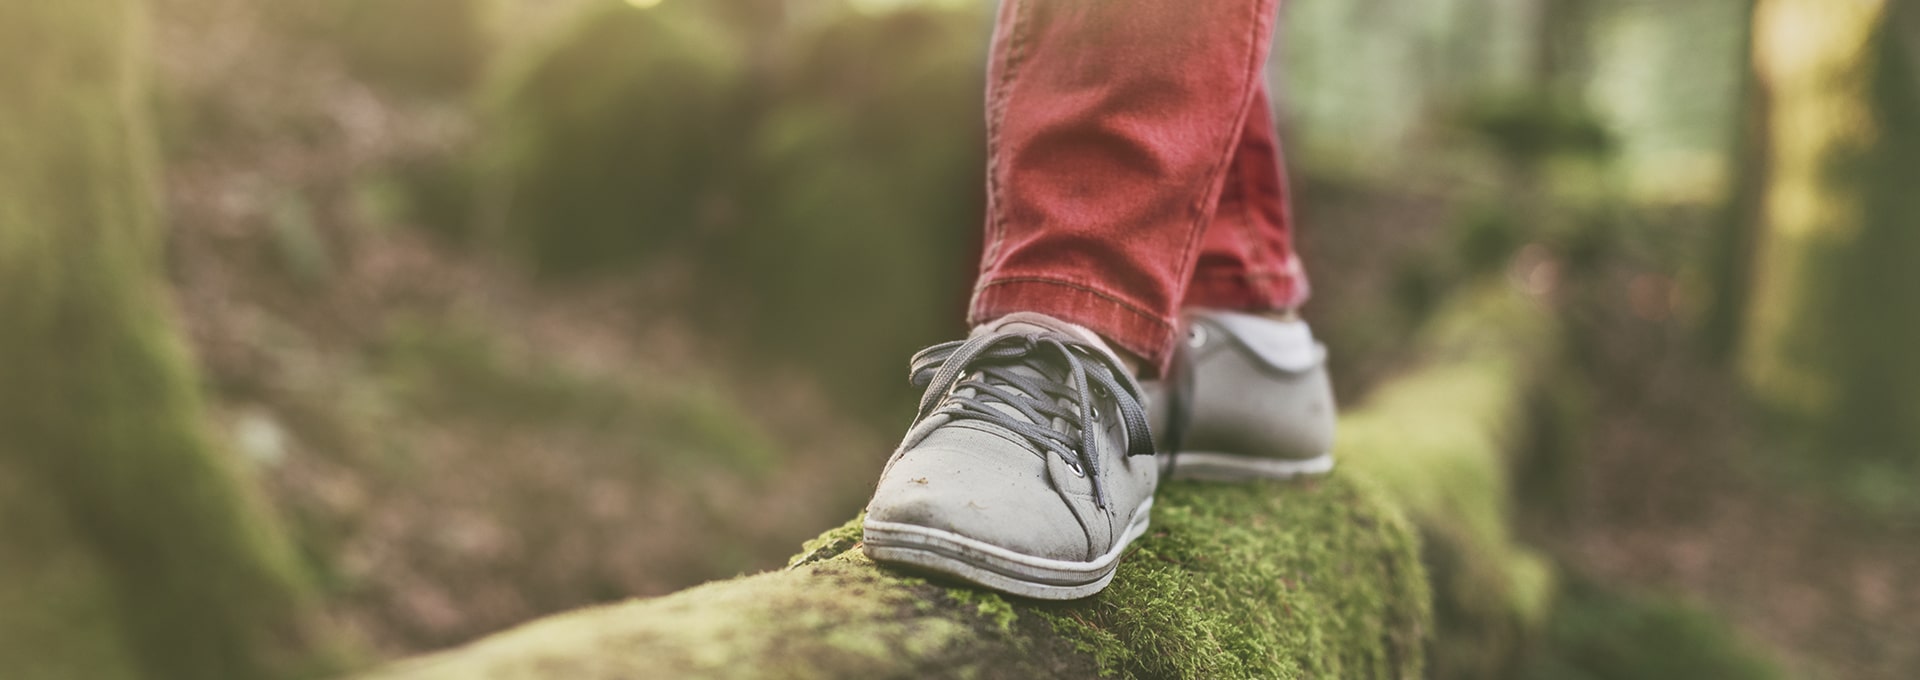 Ormanda bir kütük üzerinde dengede kalmaya çalışan gri ayakkabılı ayaklar